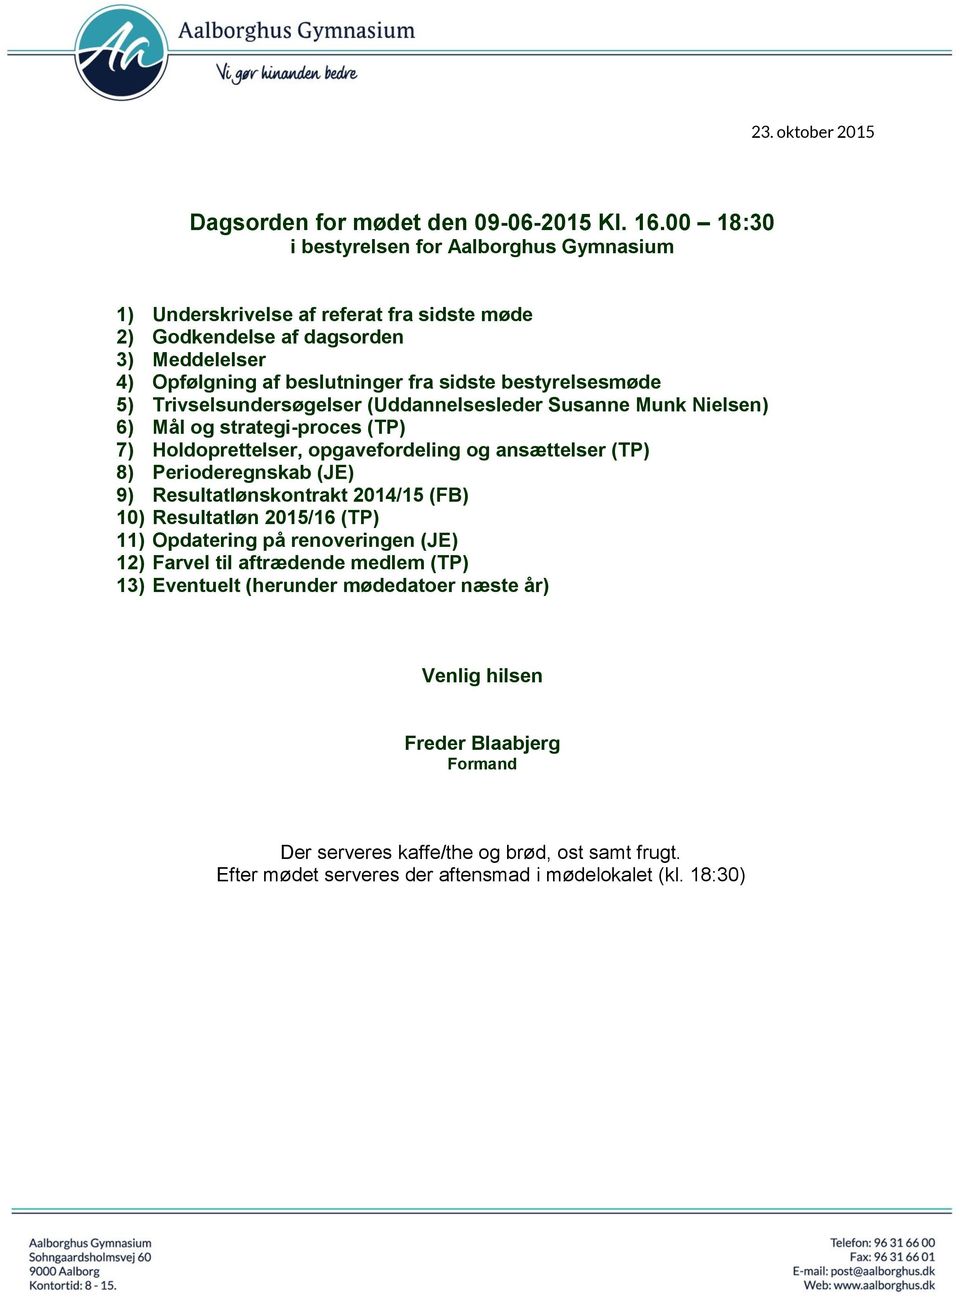 bestyrelsesmøde 5) Trivselsundersøgelser (Uddannelsesleder Susanne Munk Nielsen) 6) Mål og strategi-proces (TP) 7) Holdoprettelser, opgavefordeling og ansættelser (TP) 8) Perioderegnskab